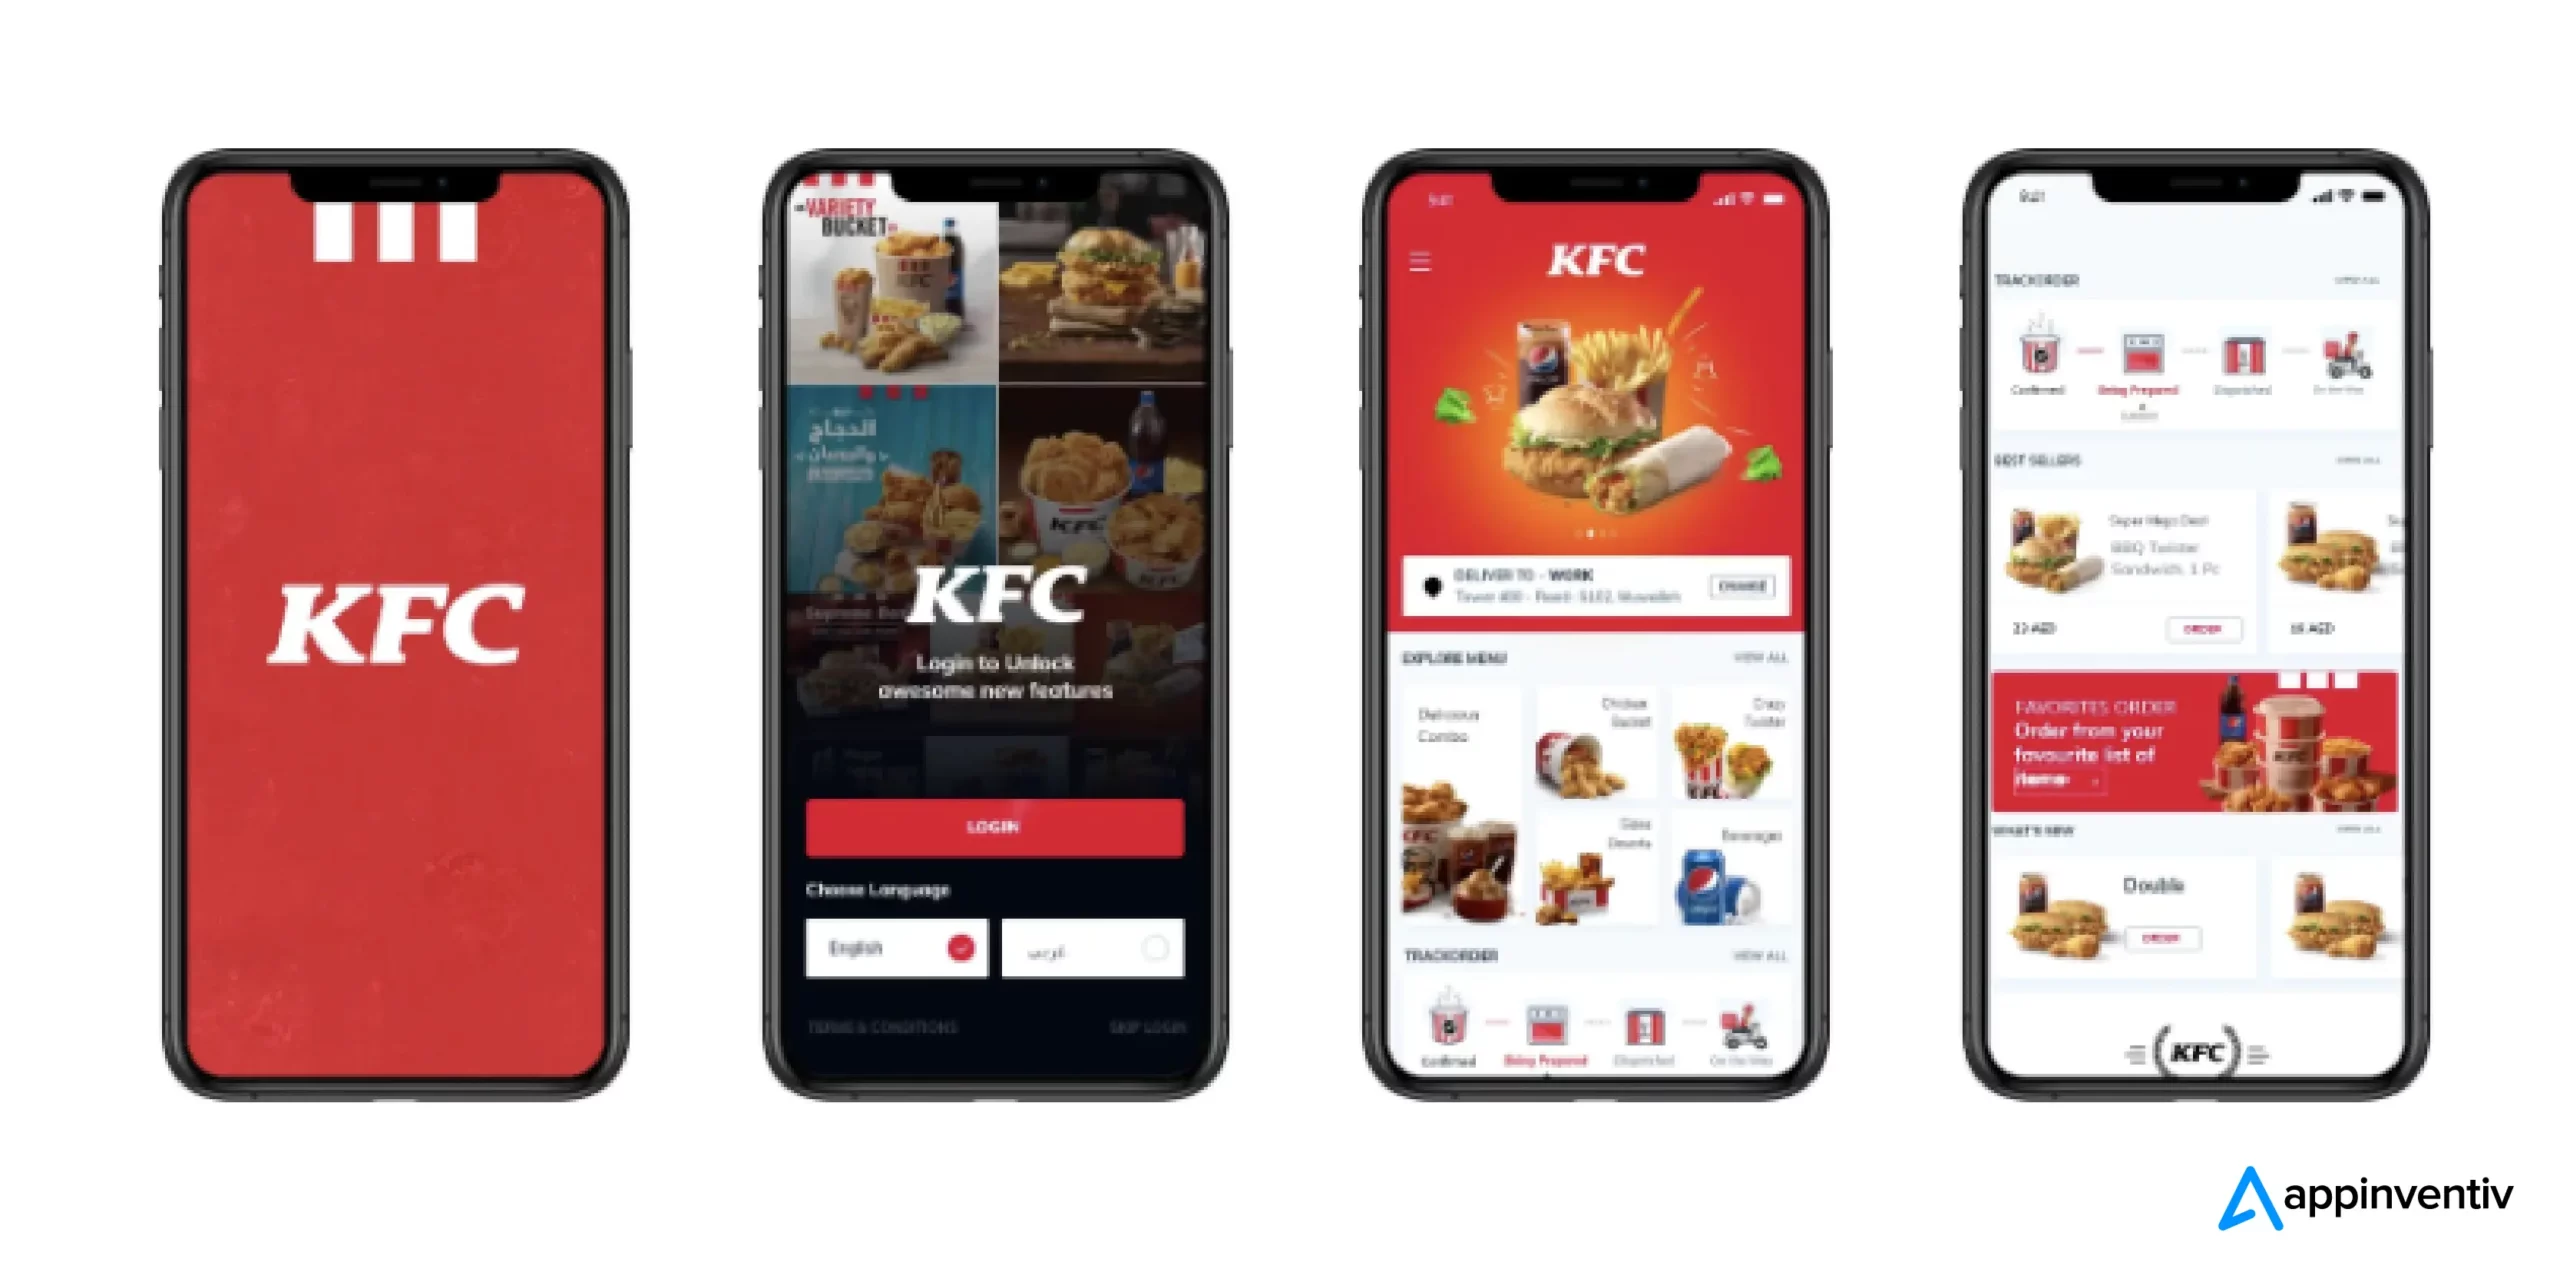 KFC's App Innovation